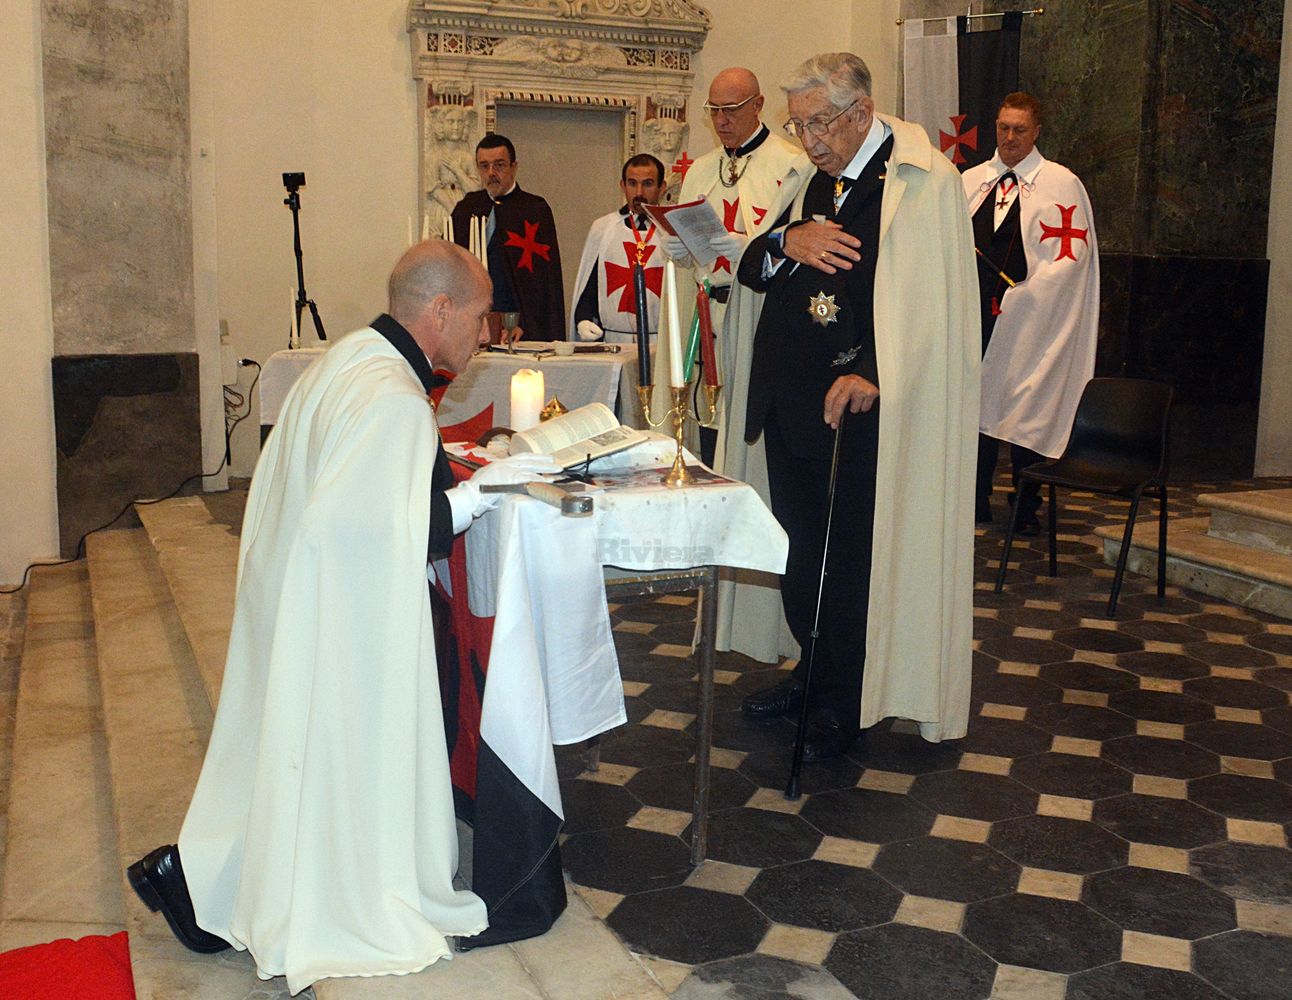 Cavalieri Templari ex chiesa San Francesco Ventimiglia 1 dicembre 2018_37